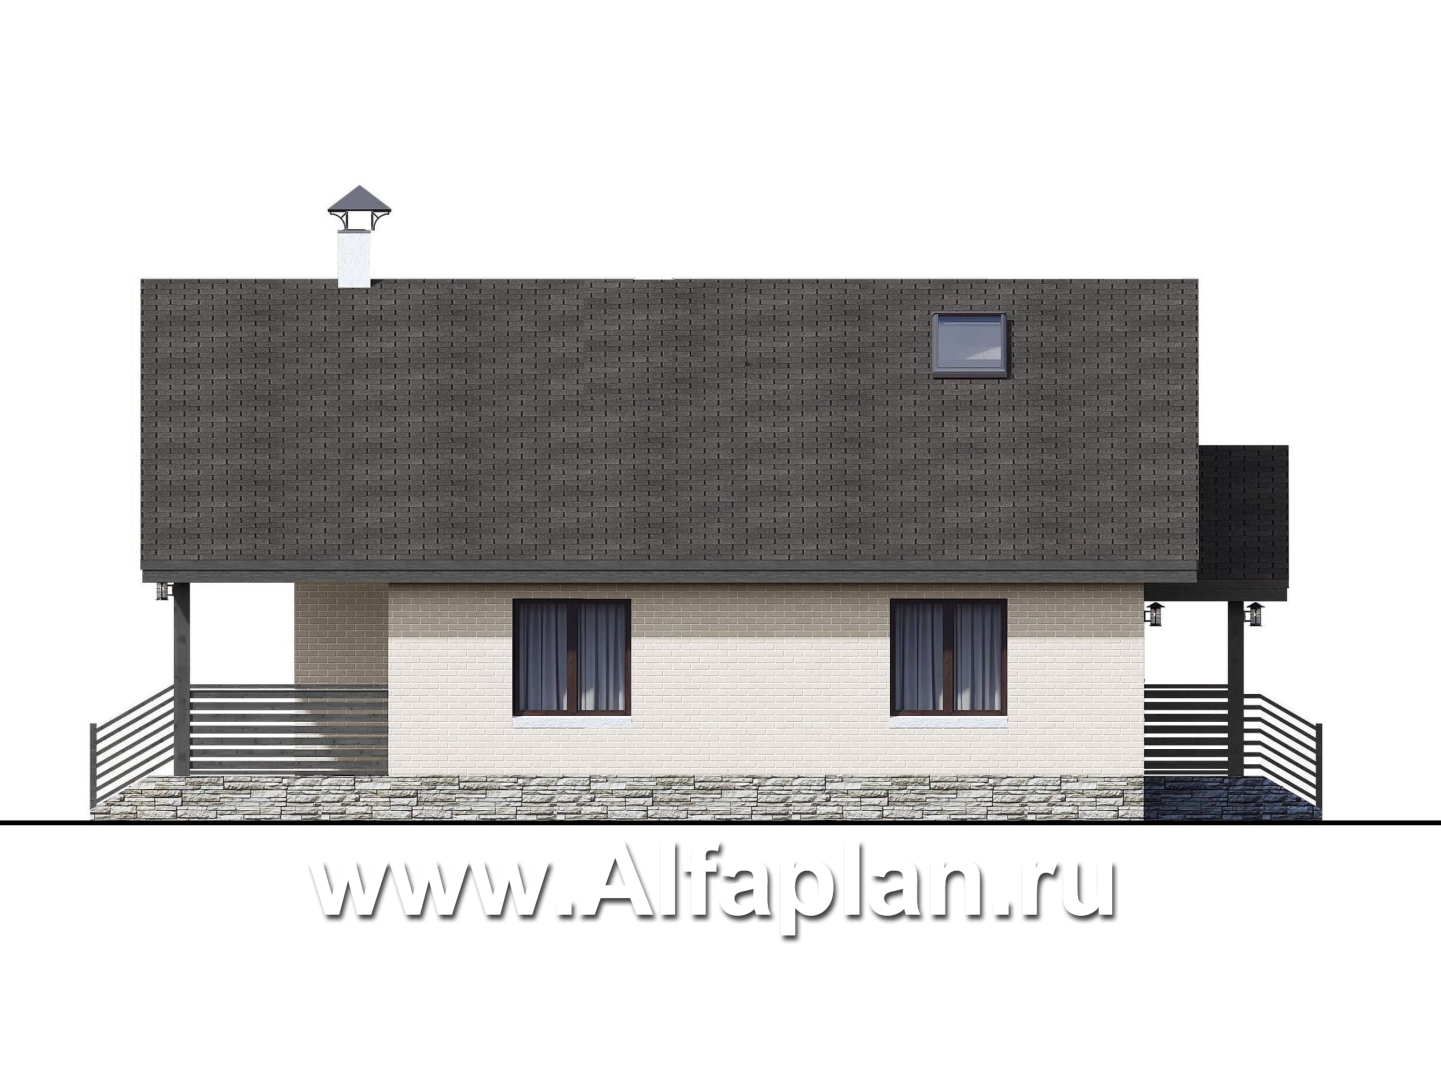 «Моризо» - проект дома с мансардой, планировка 2 спальни на 1 эт и вторая гостиная на 2 эт, шале с двускатной крышей - фасад дома